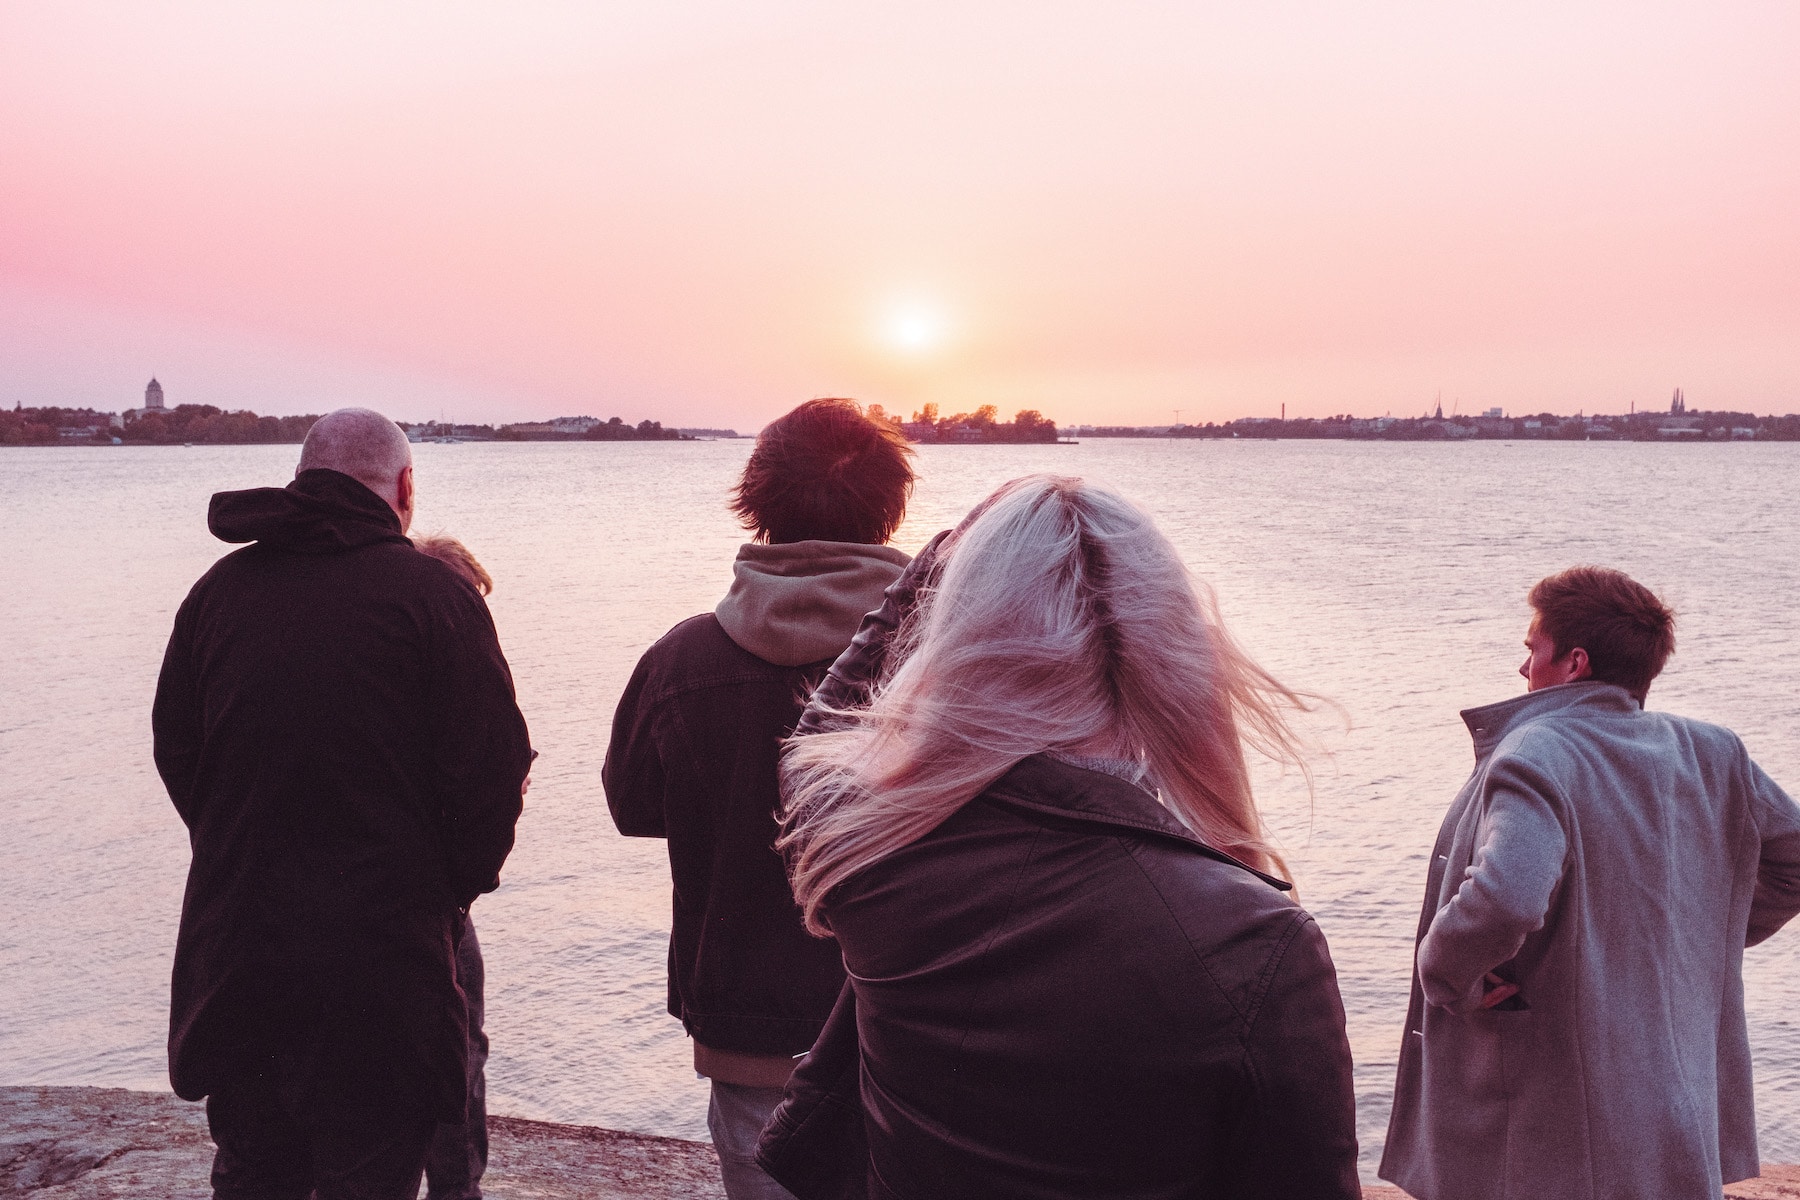 Ihmiset seisovat meren äärellä auringonlaskussa ja katsovat merelle päin.